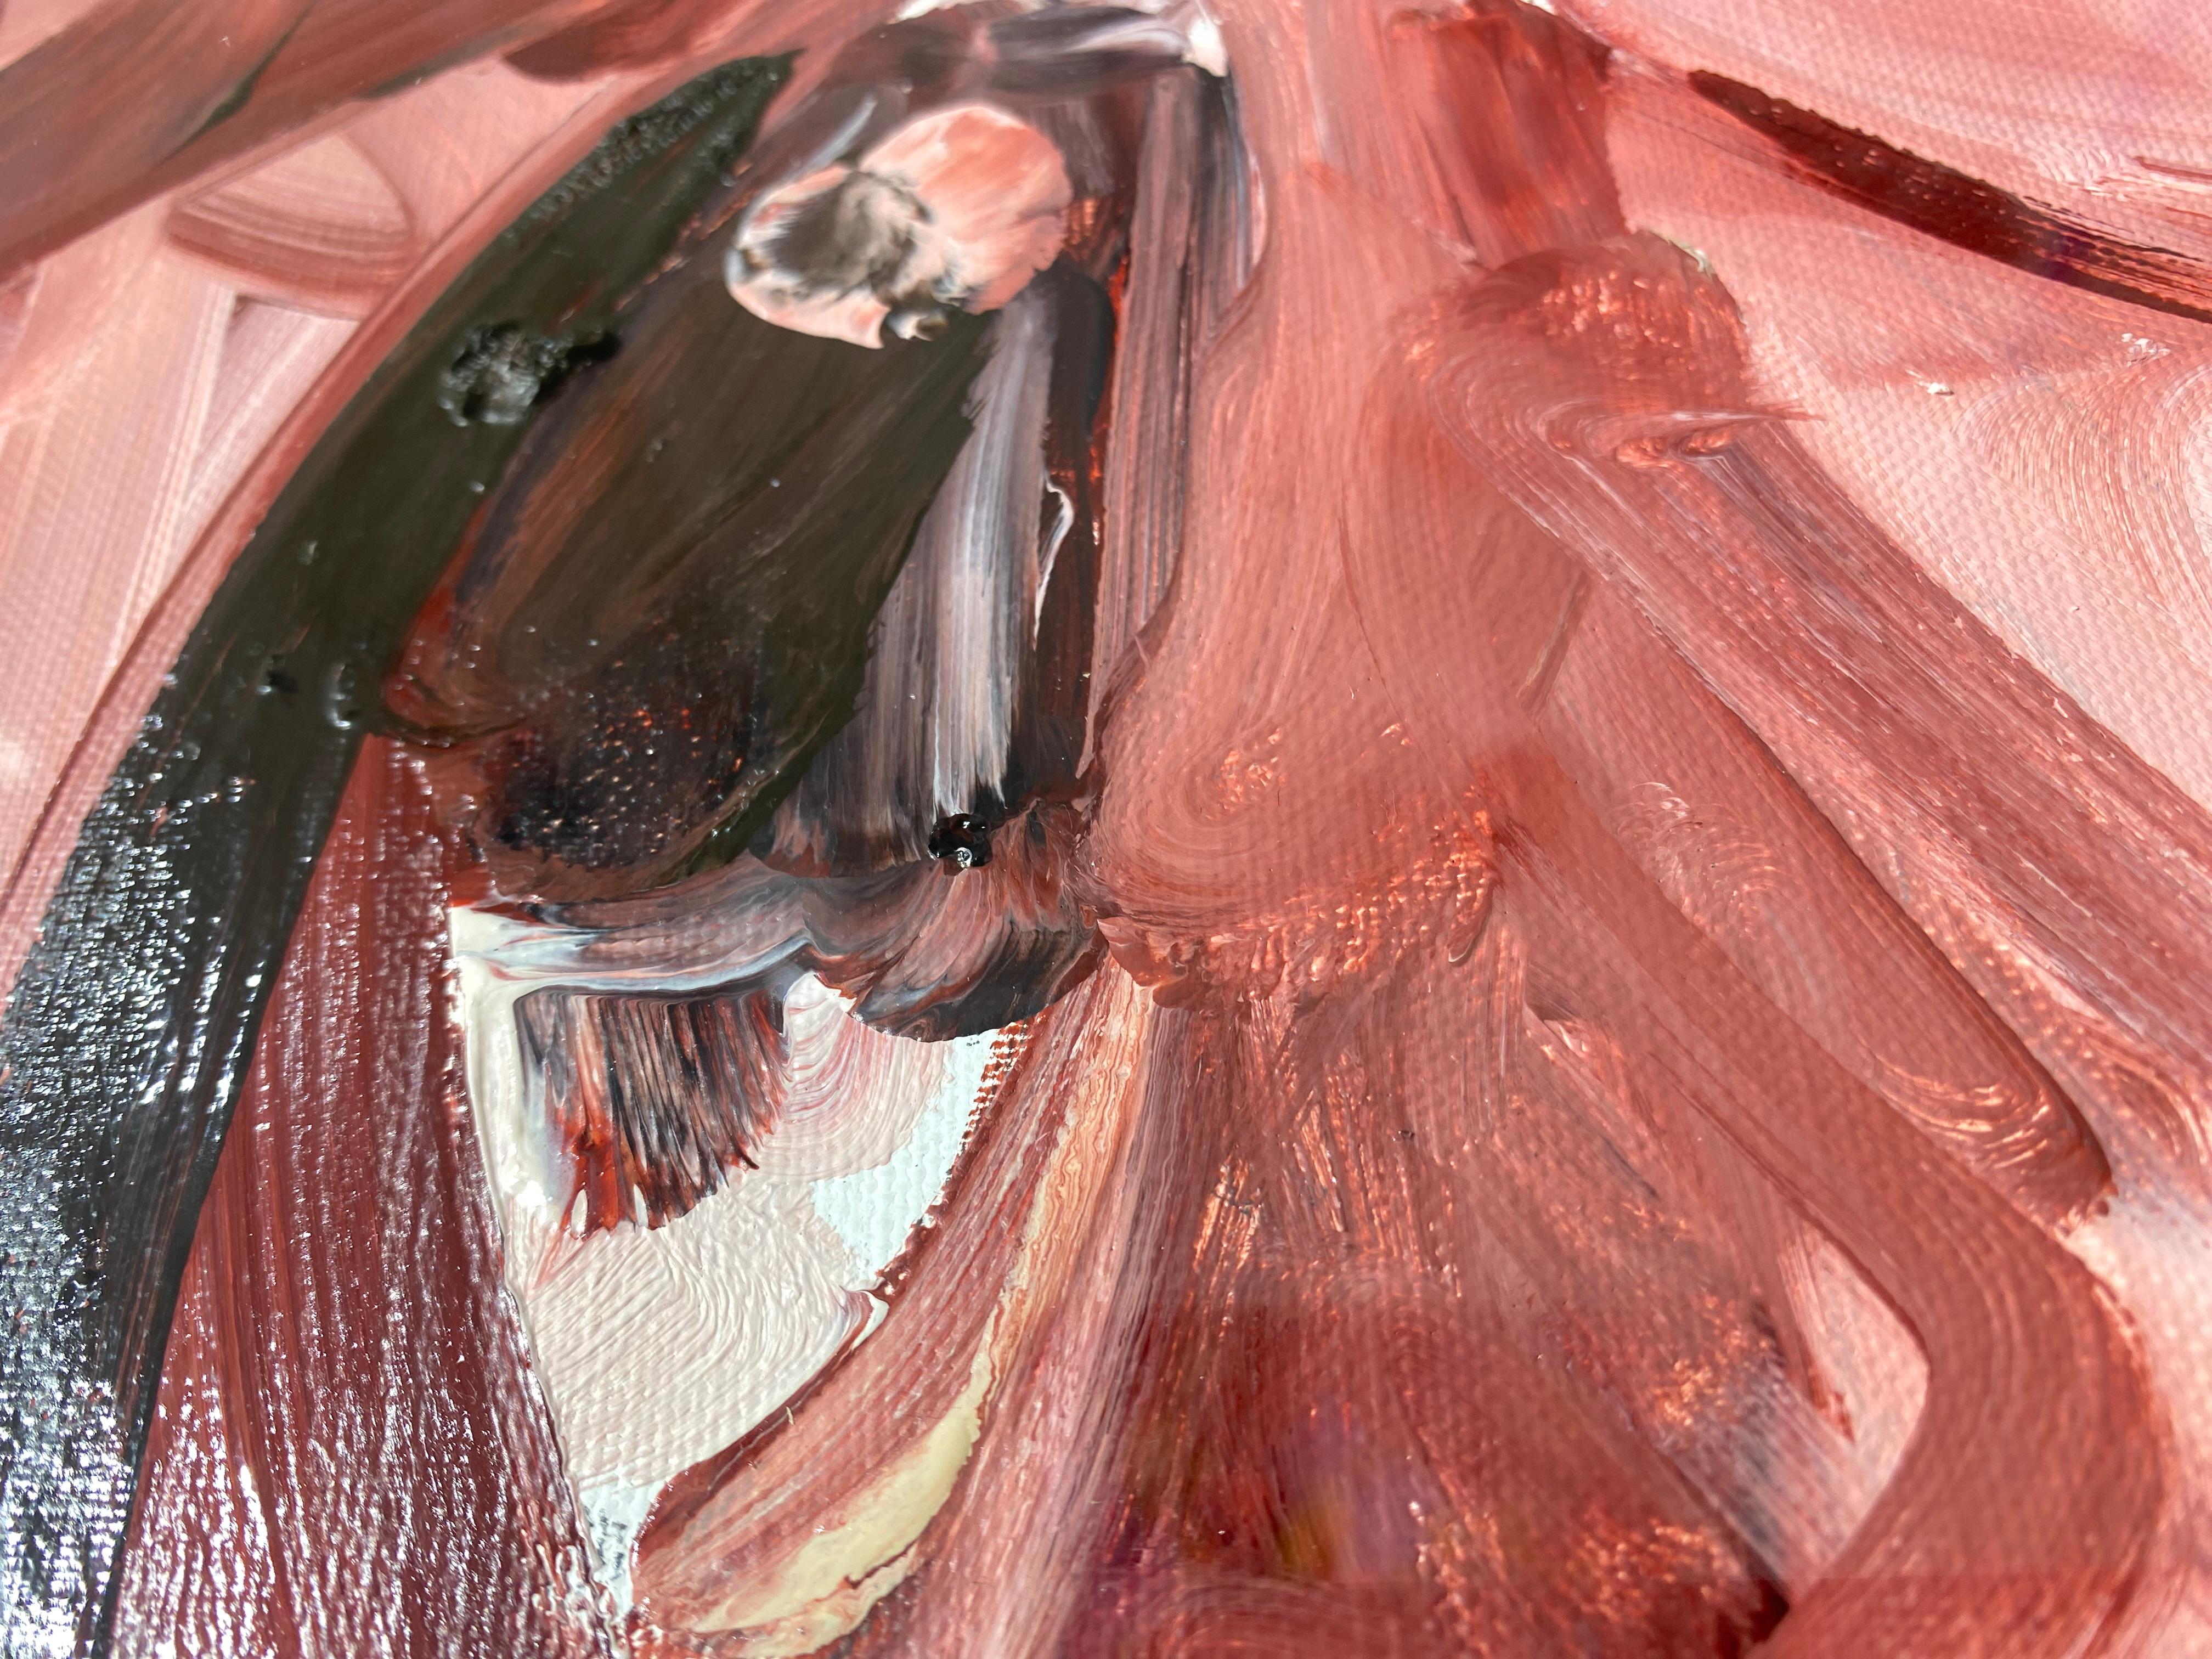 Étude, 2012
Huile sur toile

On sent beaucoup de délicatesse dans les traits des dessins de Philippe Pasqua, ce qui n'enlève rien à la force de chaque œuvre. Ainsi, un flirt entre finesse et brutalité se crée dans ses nombreuses œuvres. Il est